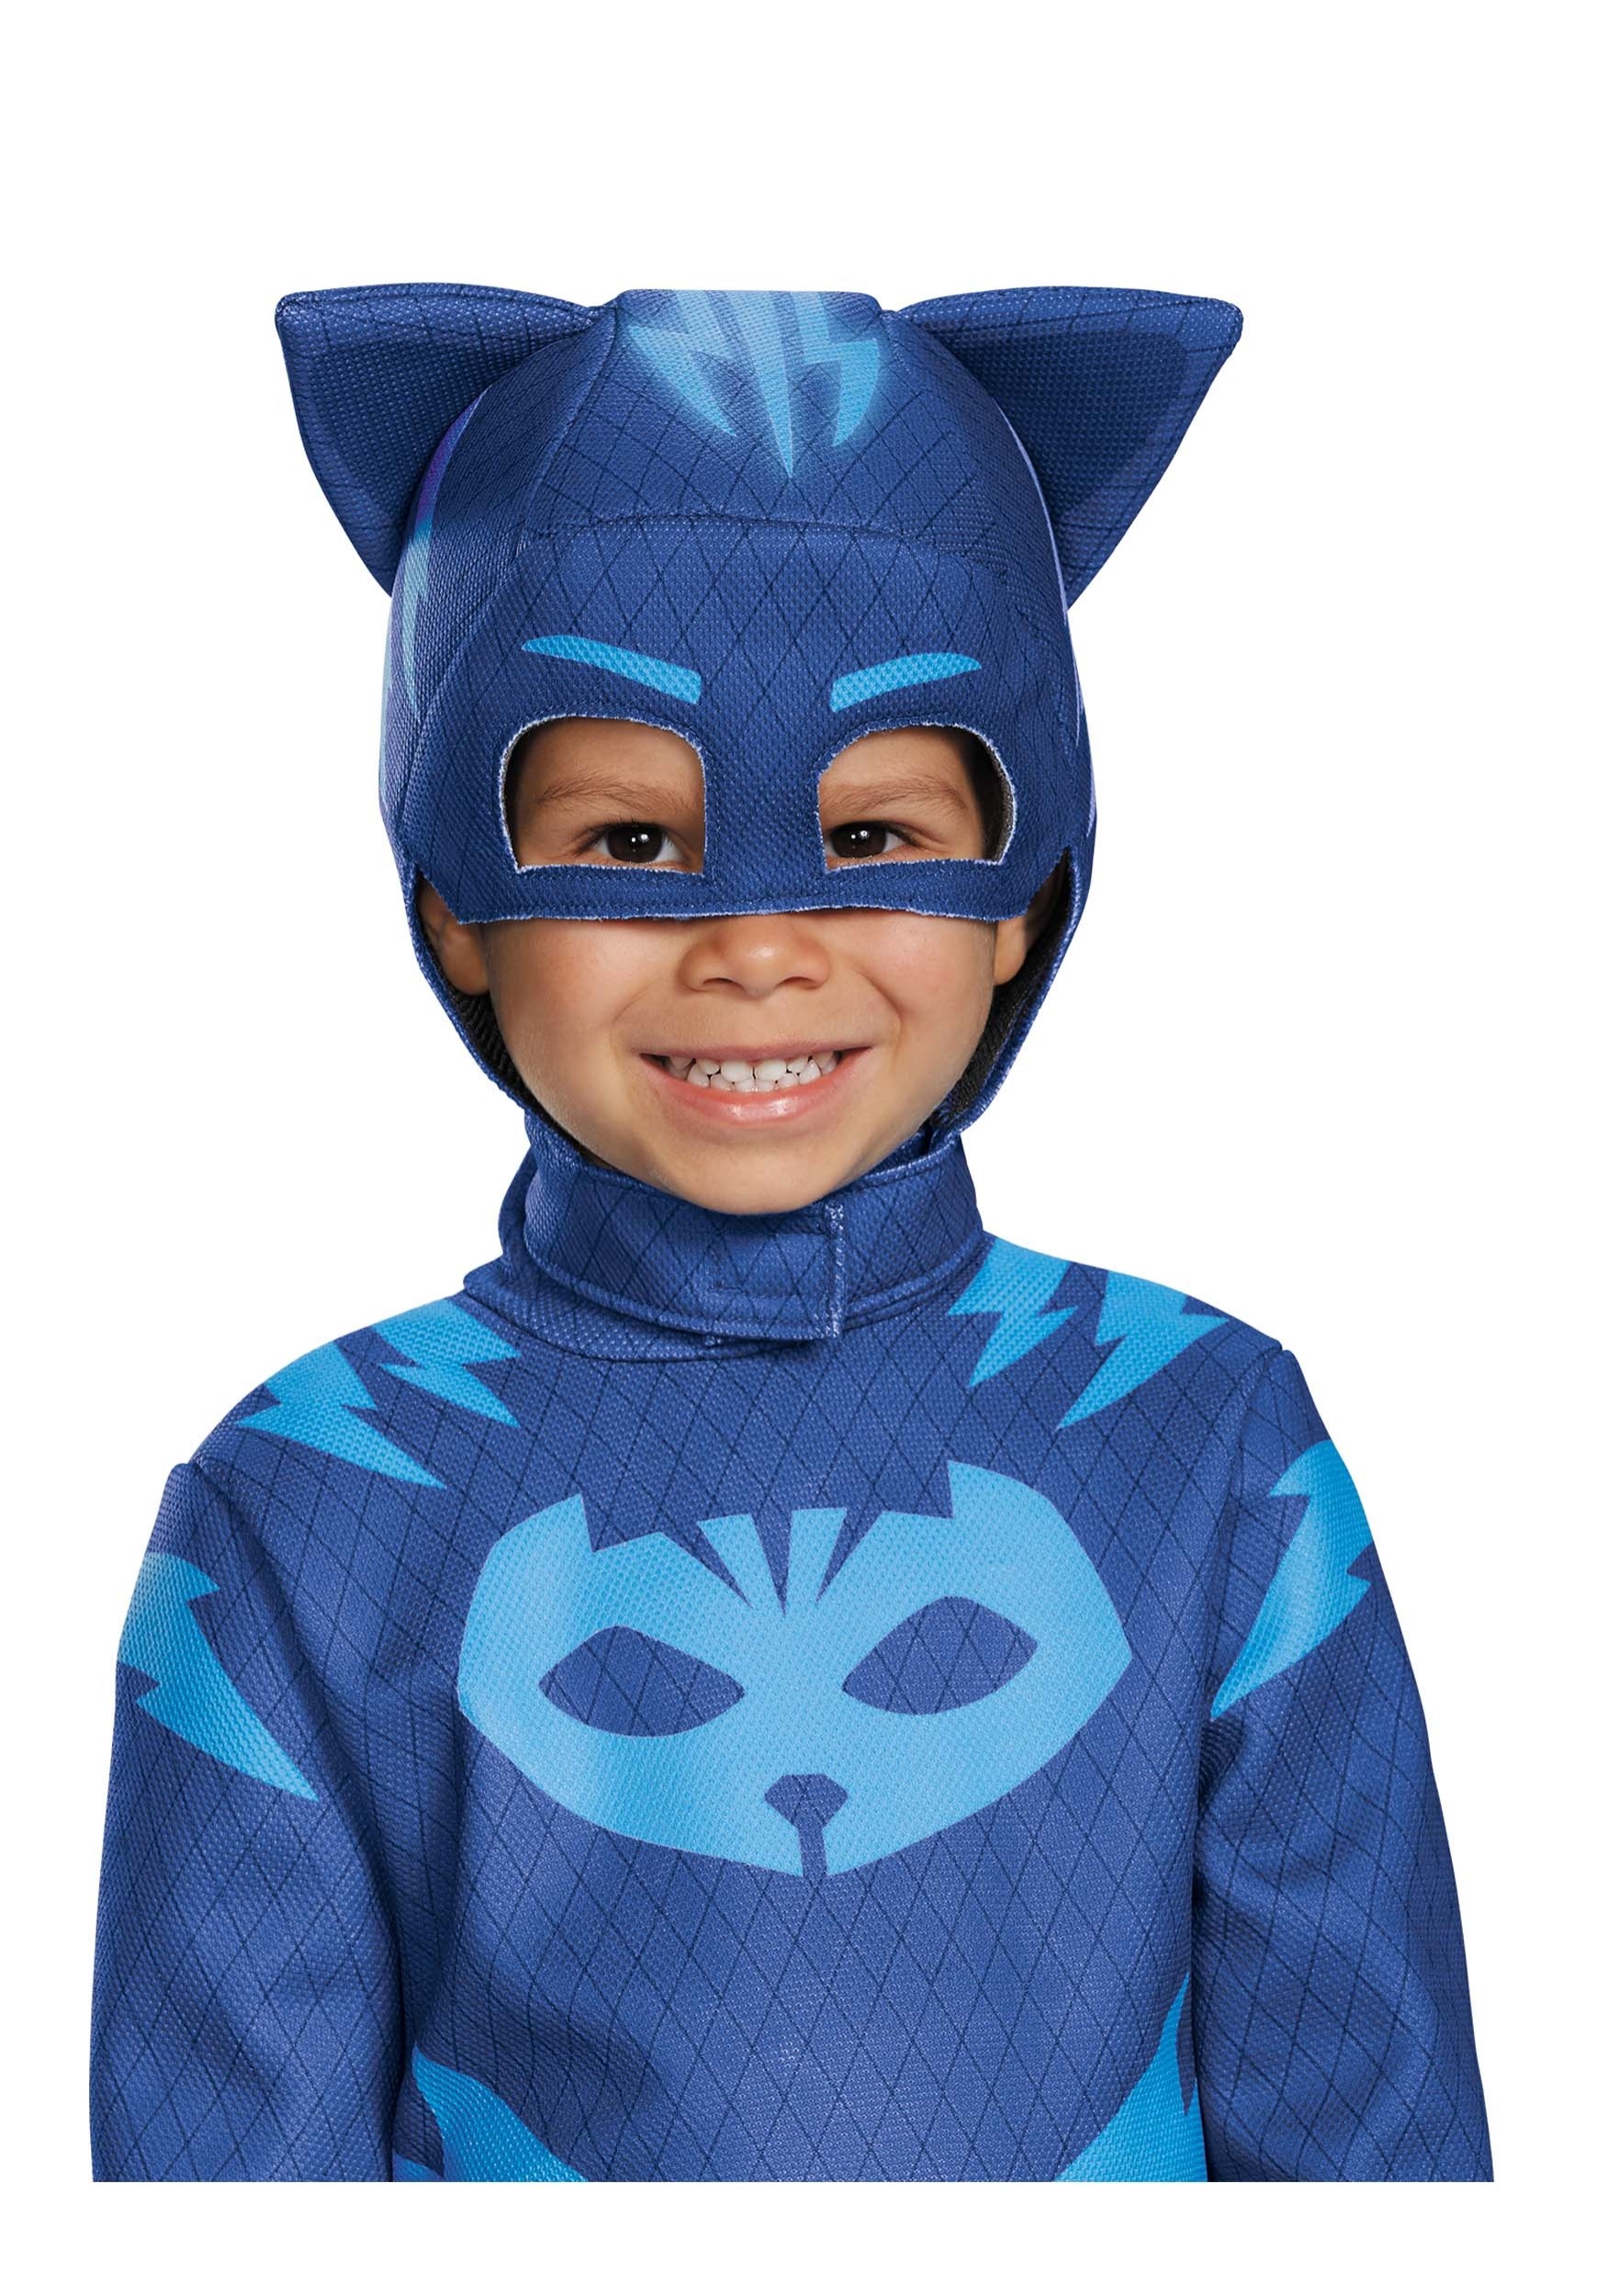 PJ Masks Catboy Mask for Kids